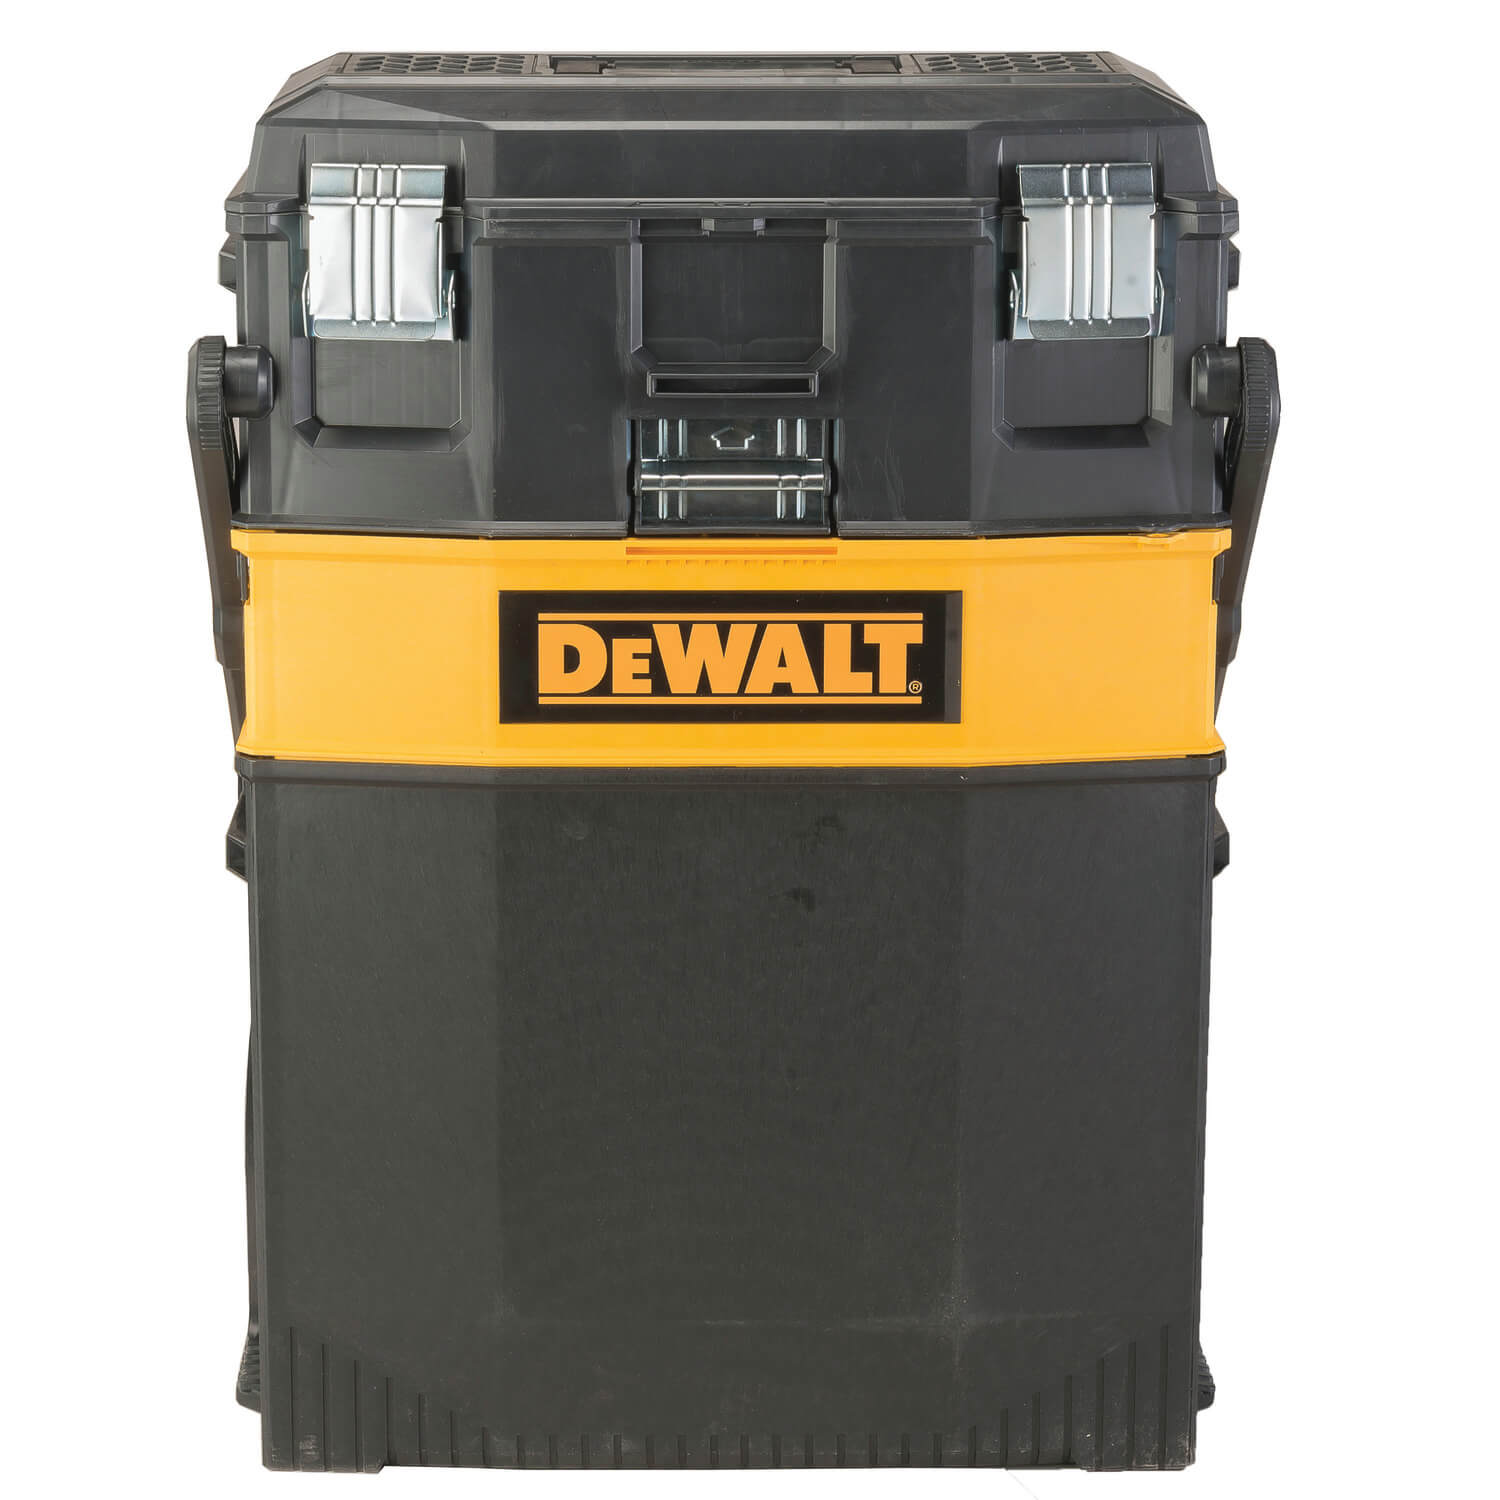 DEWALT DWST20880 MULTI-LEVEL WORKSHOP - wise-line-tools